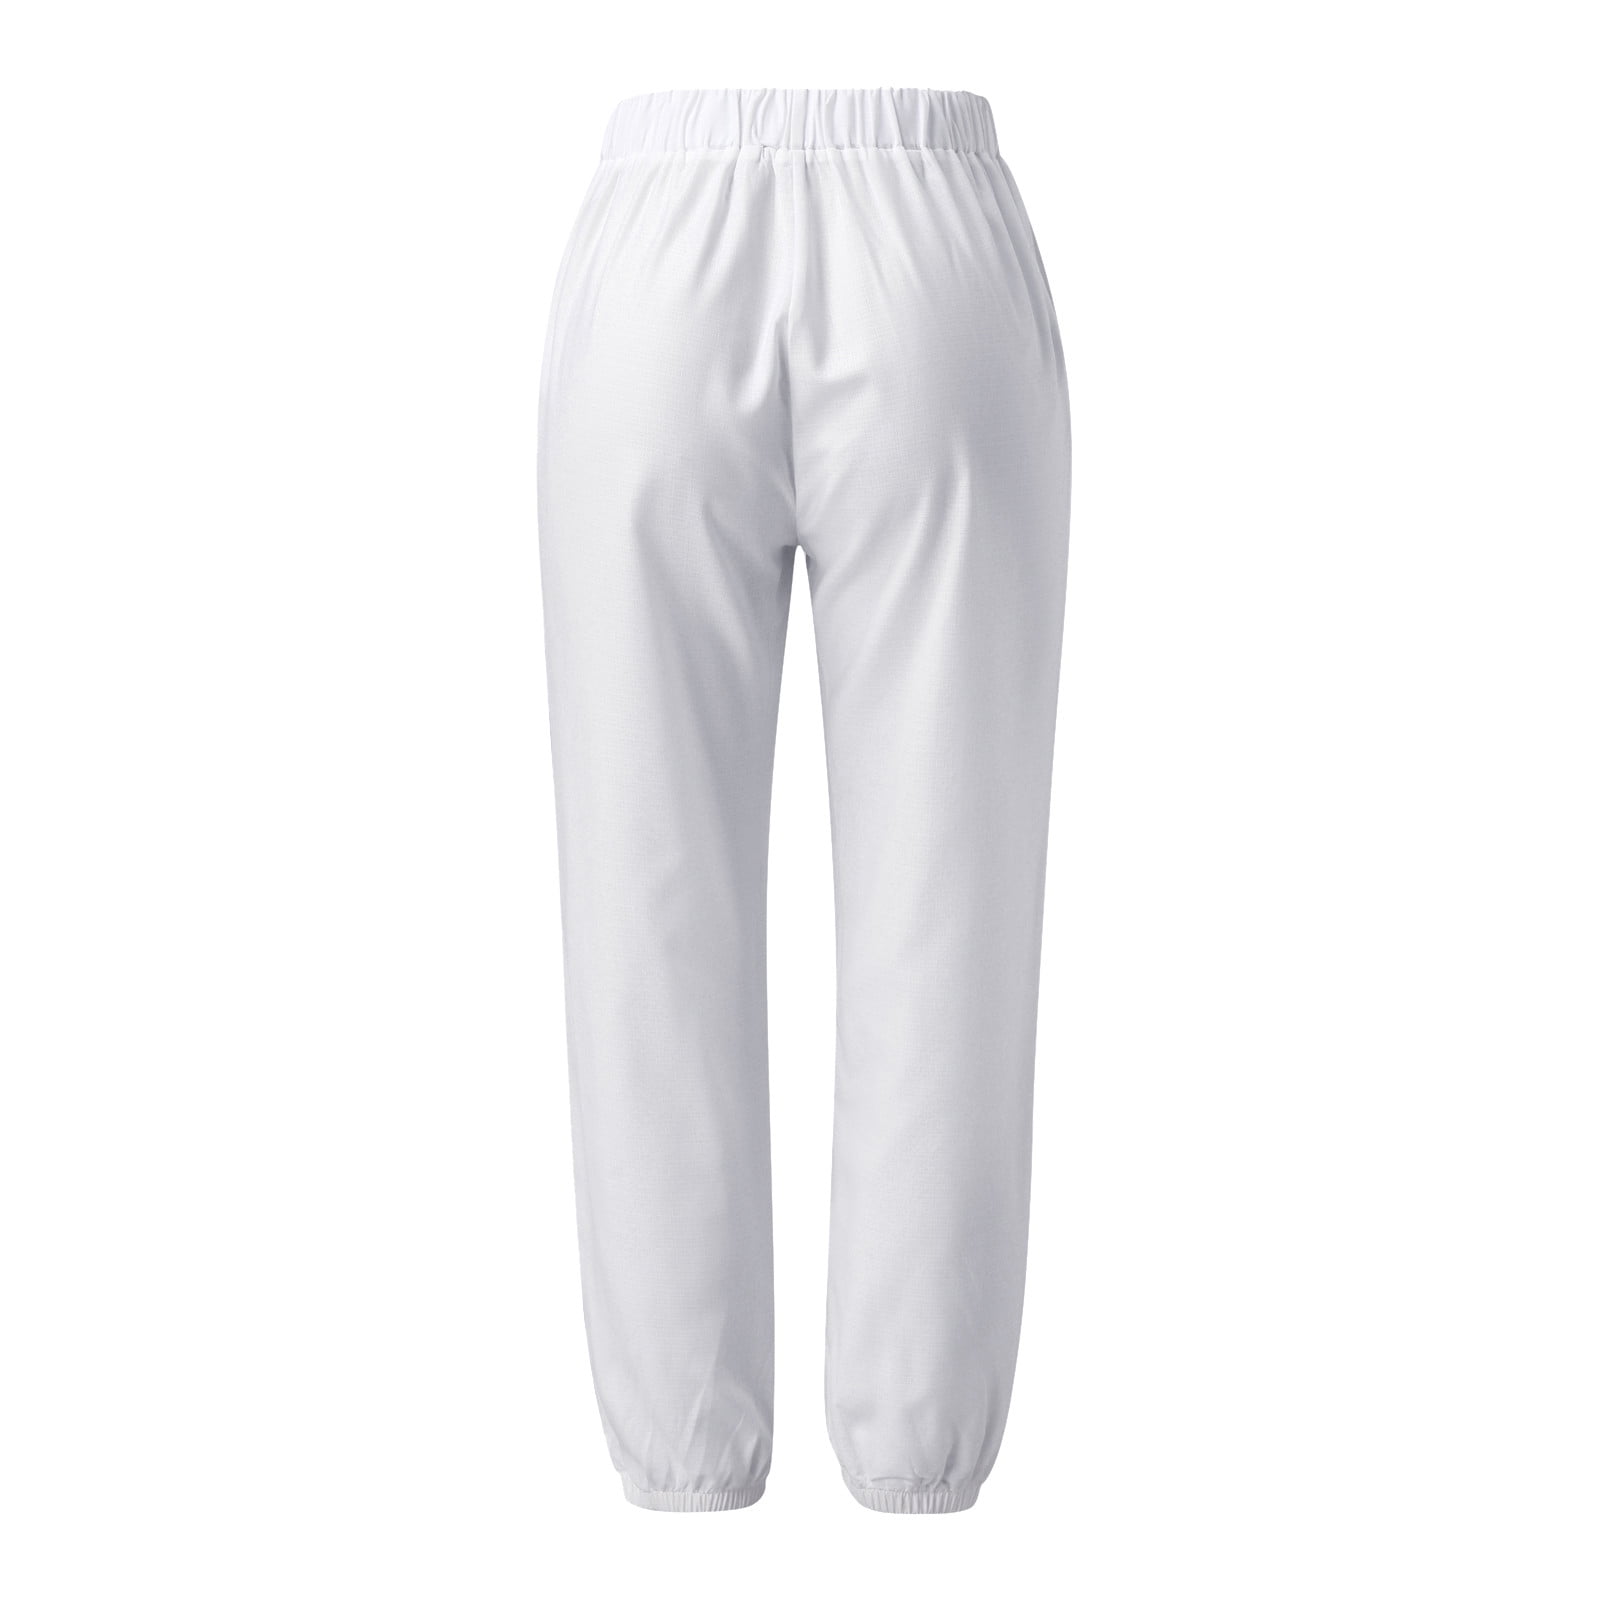 gvdentm Sweatpants Women's Casual Cotton Linen Pant w/Unique Pockets -  Walmart.com